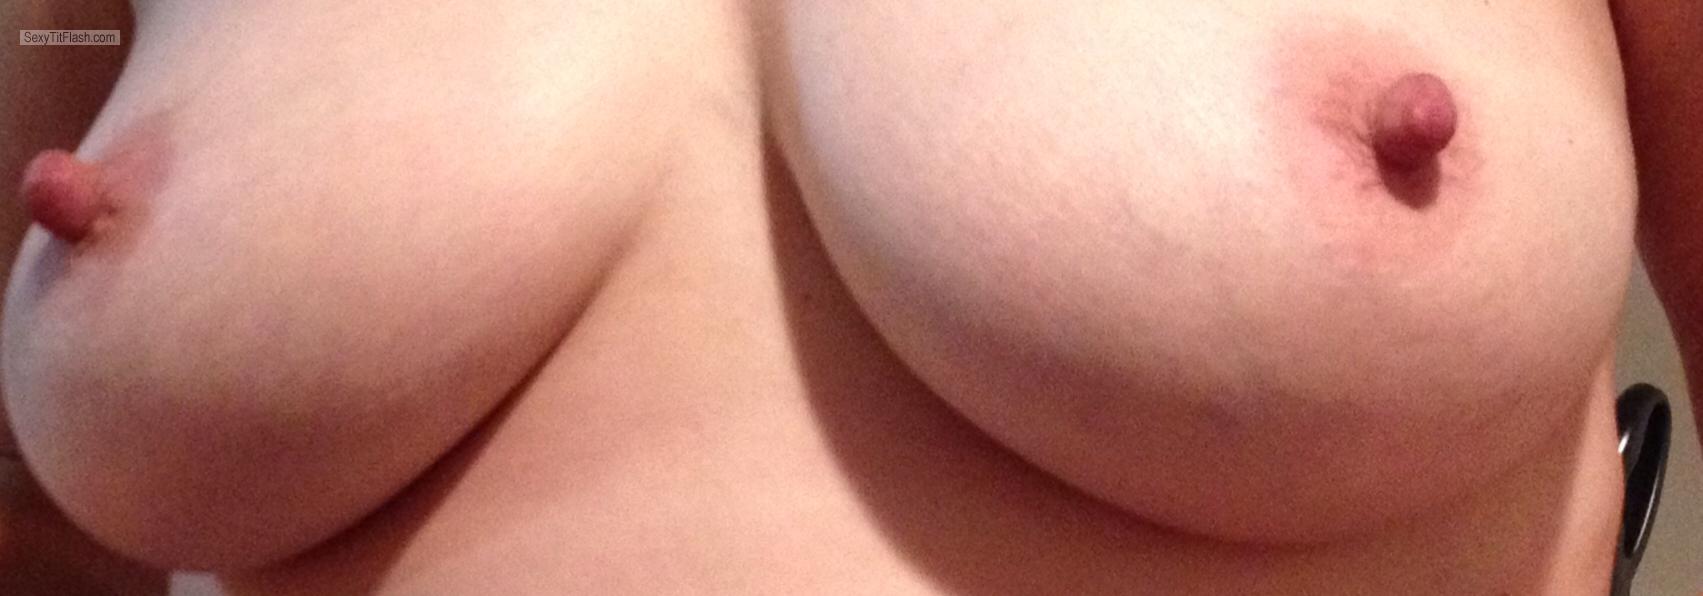 Tit Flash: My Big Tits - Topless Reelnice from United Kingdom